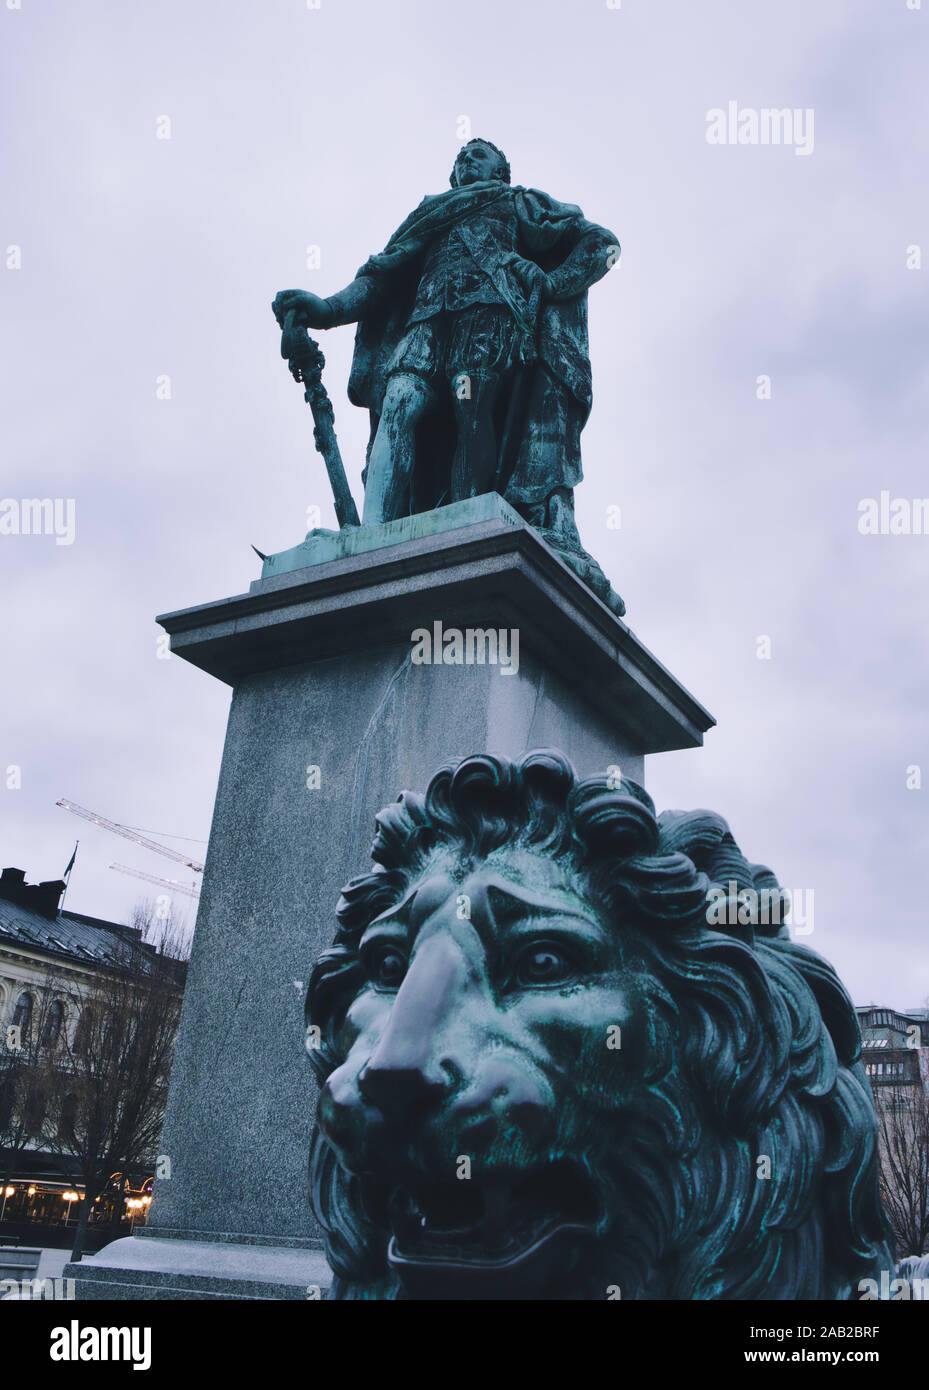 Statua del Re svedese Carlo XIII e un leone, Kungstradgarden, Stoccolma, Svezia Foto Stock